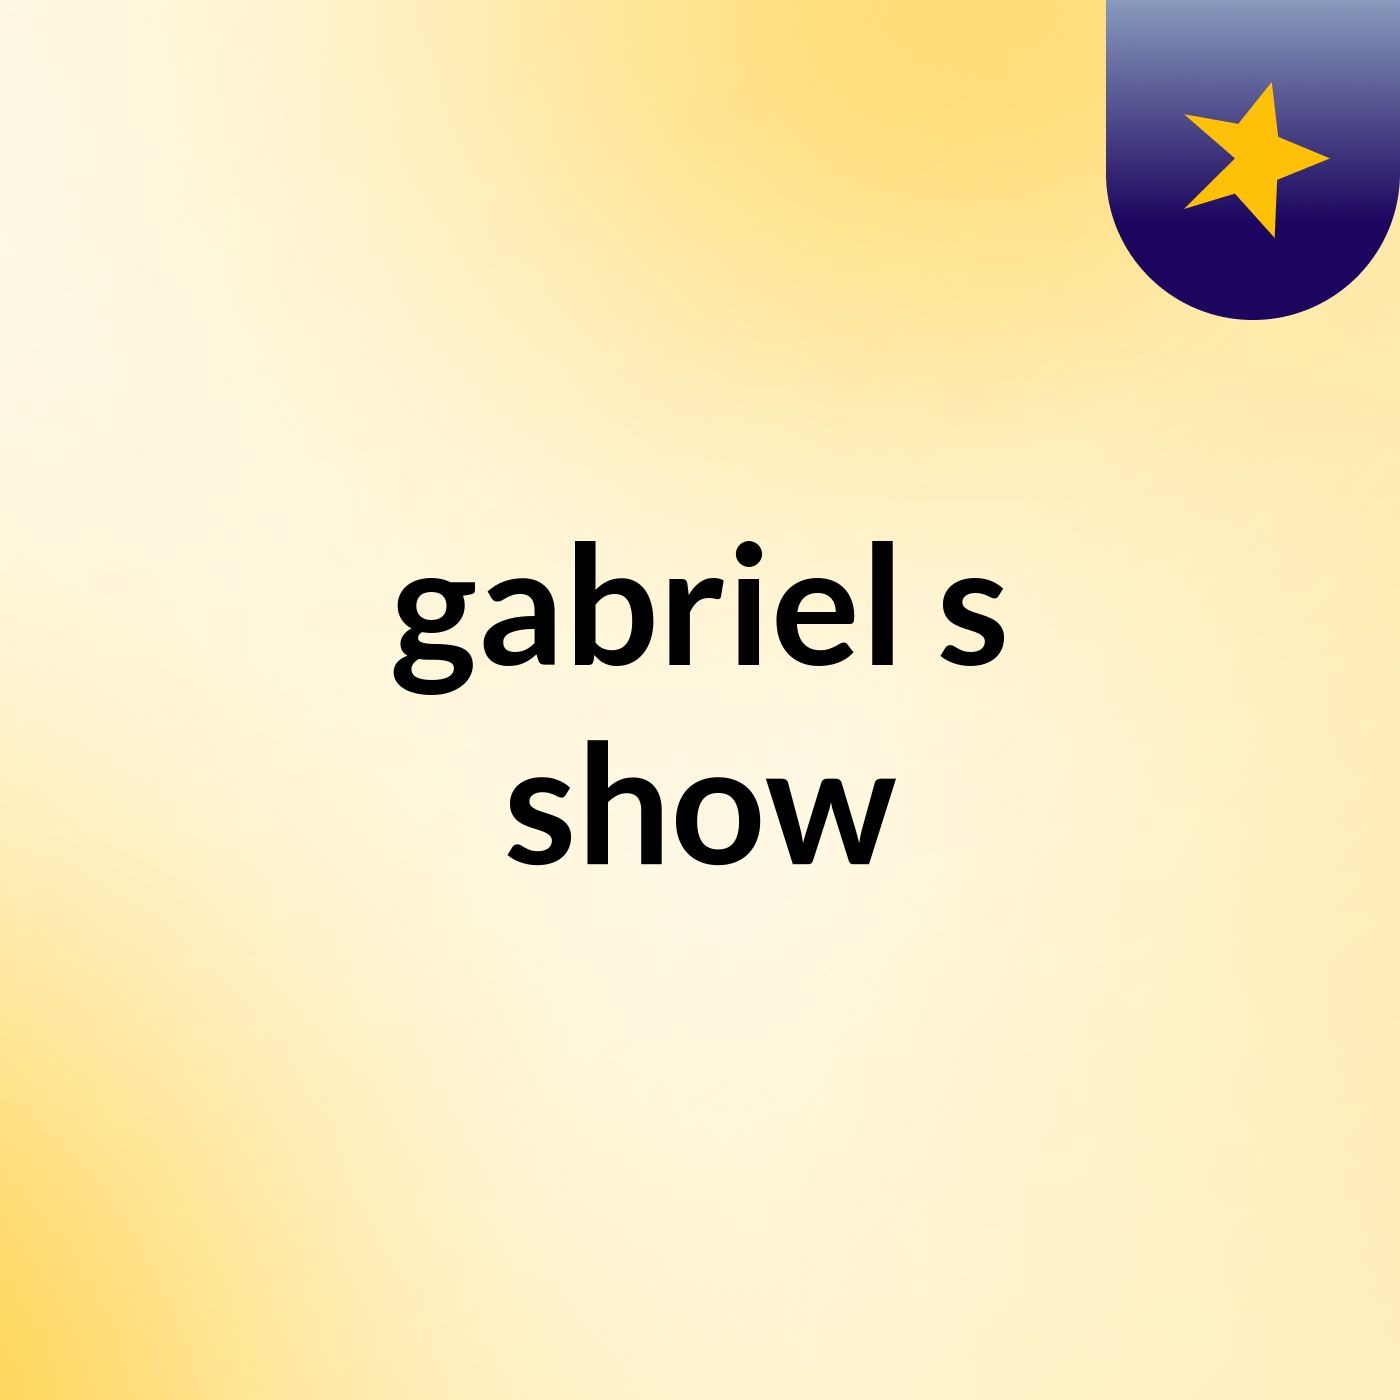 gabriel's show